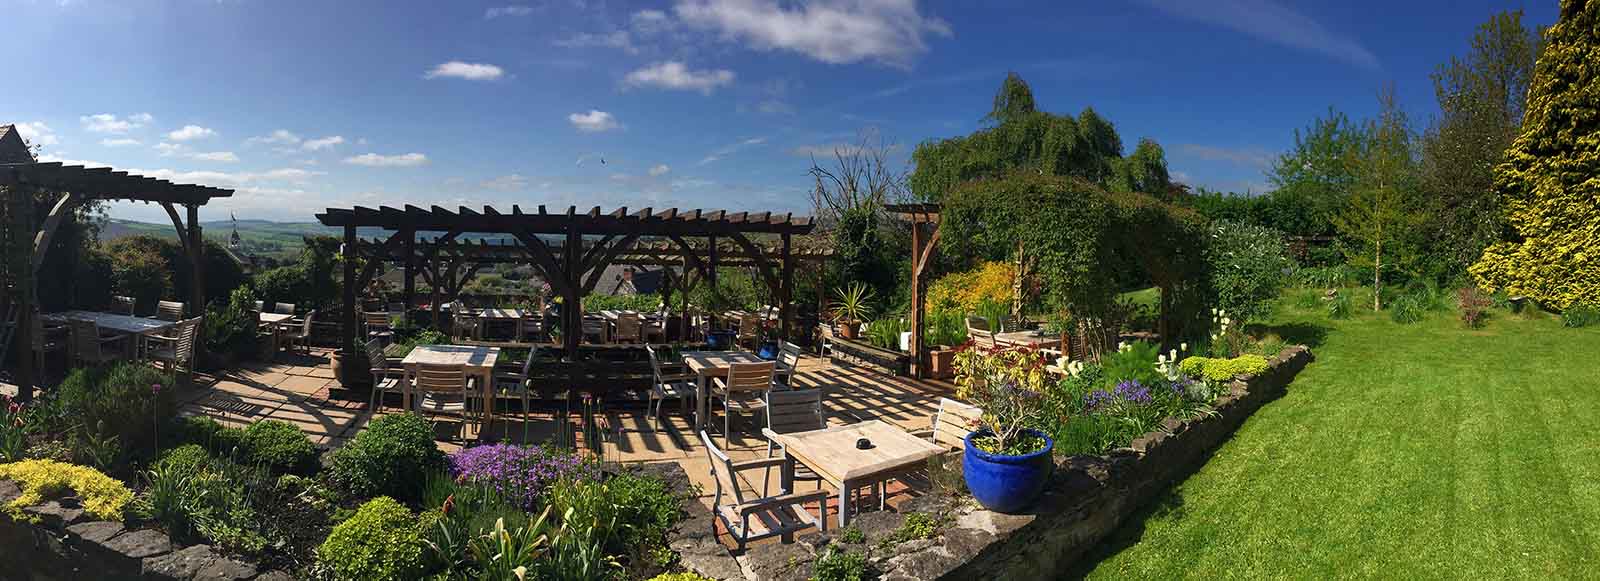 Professional Gardener Near Me | Garden Advice UK | Garden Designers Near Me UK